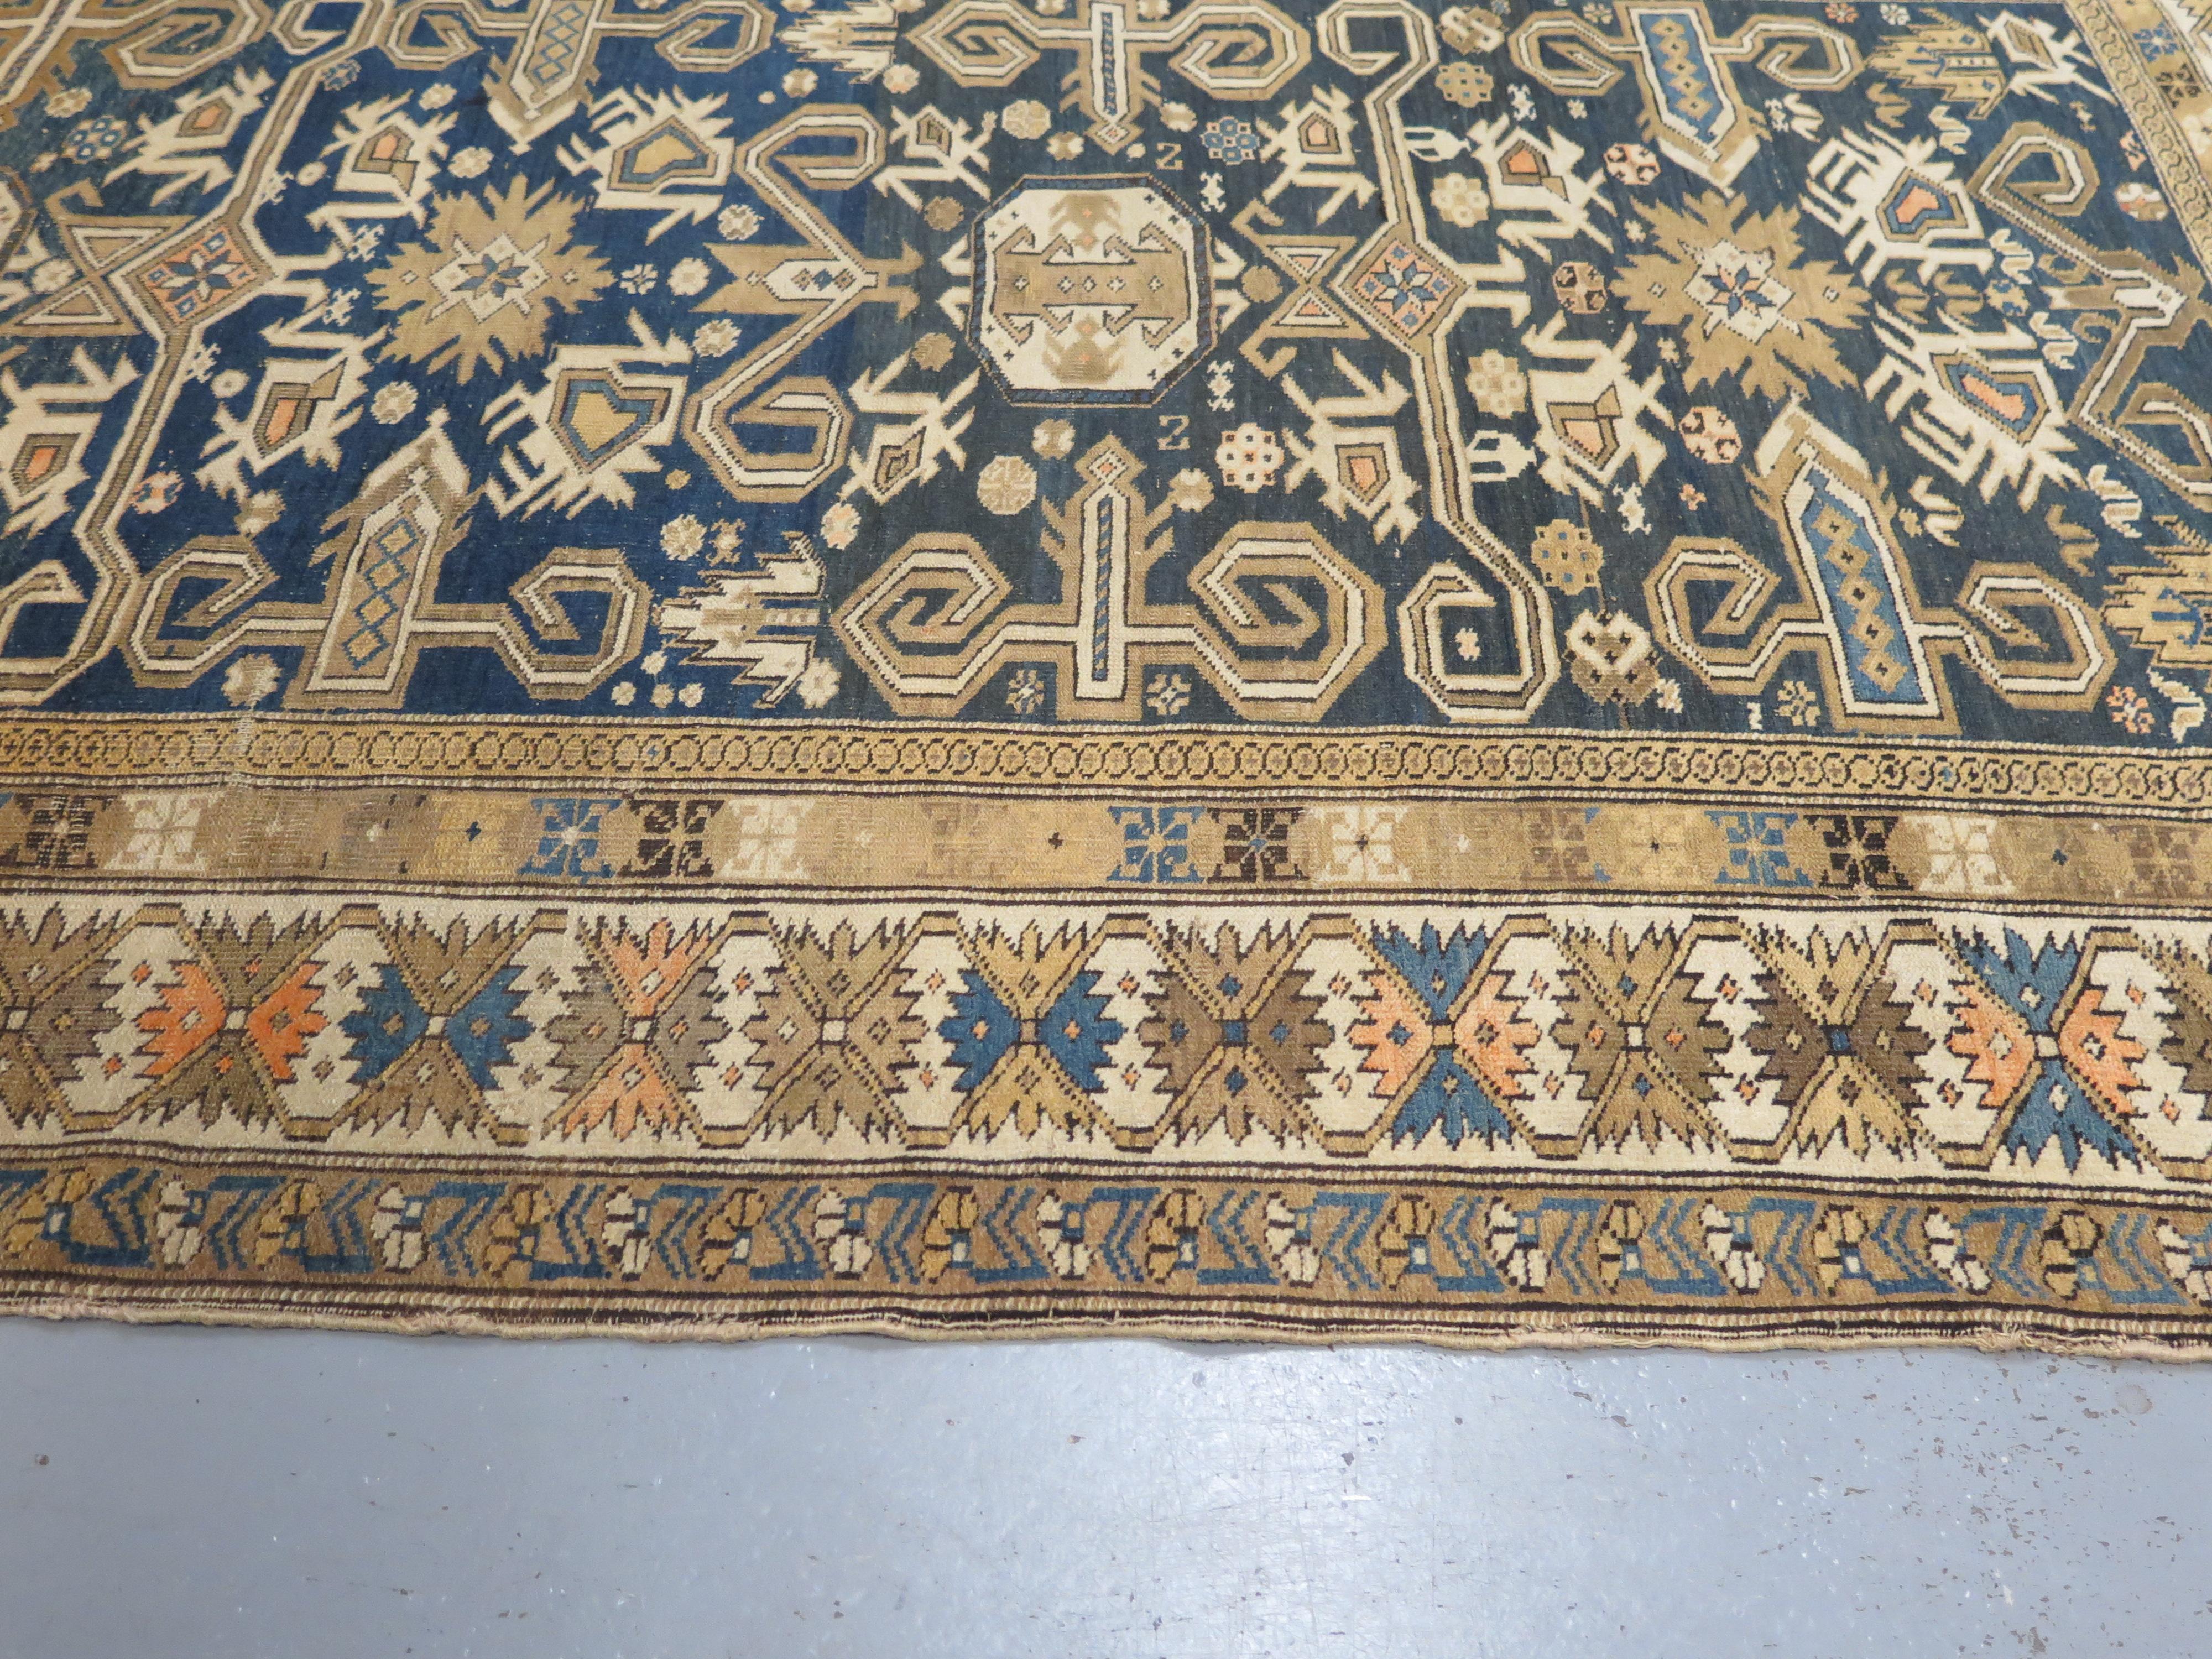 Les tapis anciens de Kouba-Shirvan comptent parmi les tissages caucasiens les plus recherchés. Ils sont réputés pour leur style nuancé et complexe qui les distingue des autres tapis de la région. Ces pièces sont extraordinairement finement tissées